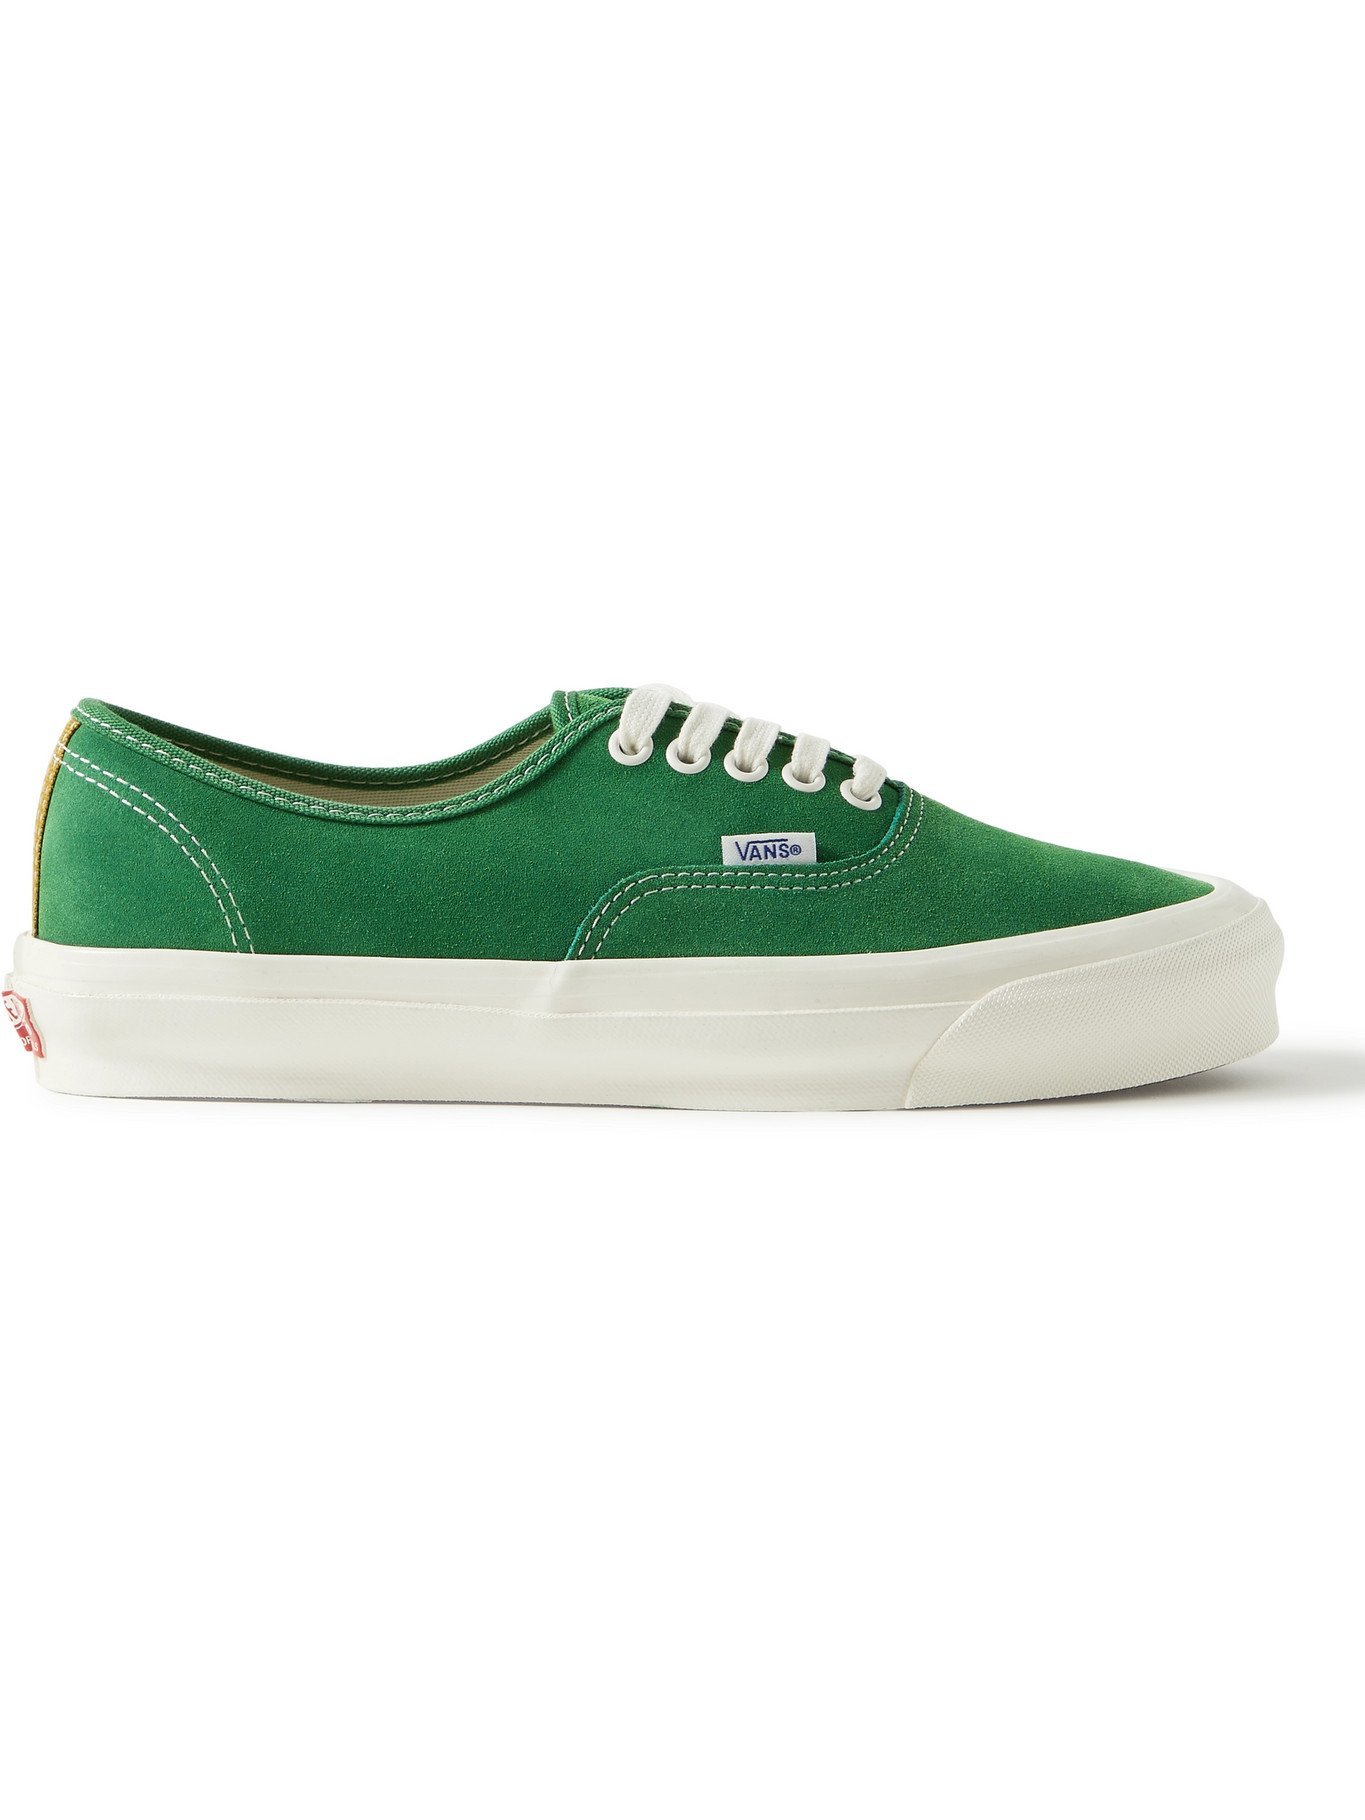 - UA OG LX Suede Sneakers - Green Vans